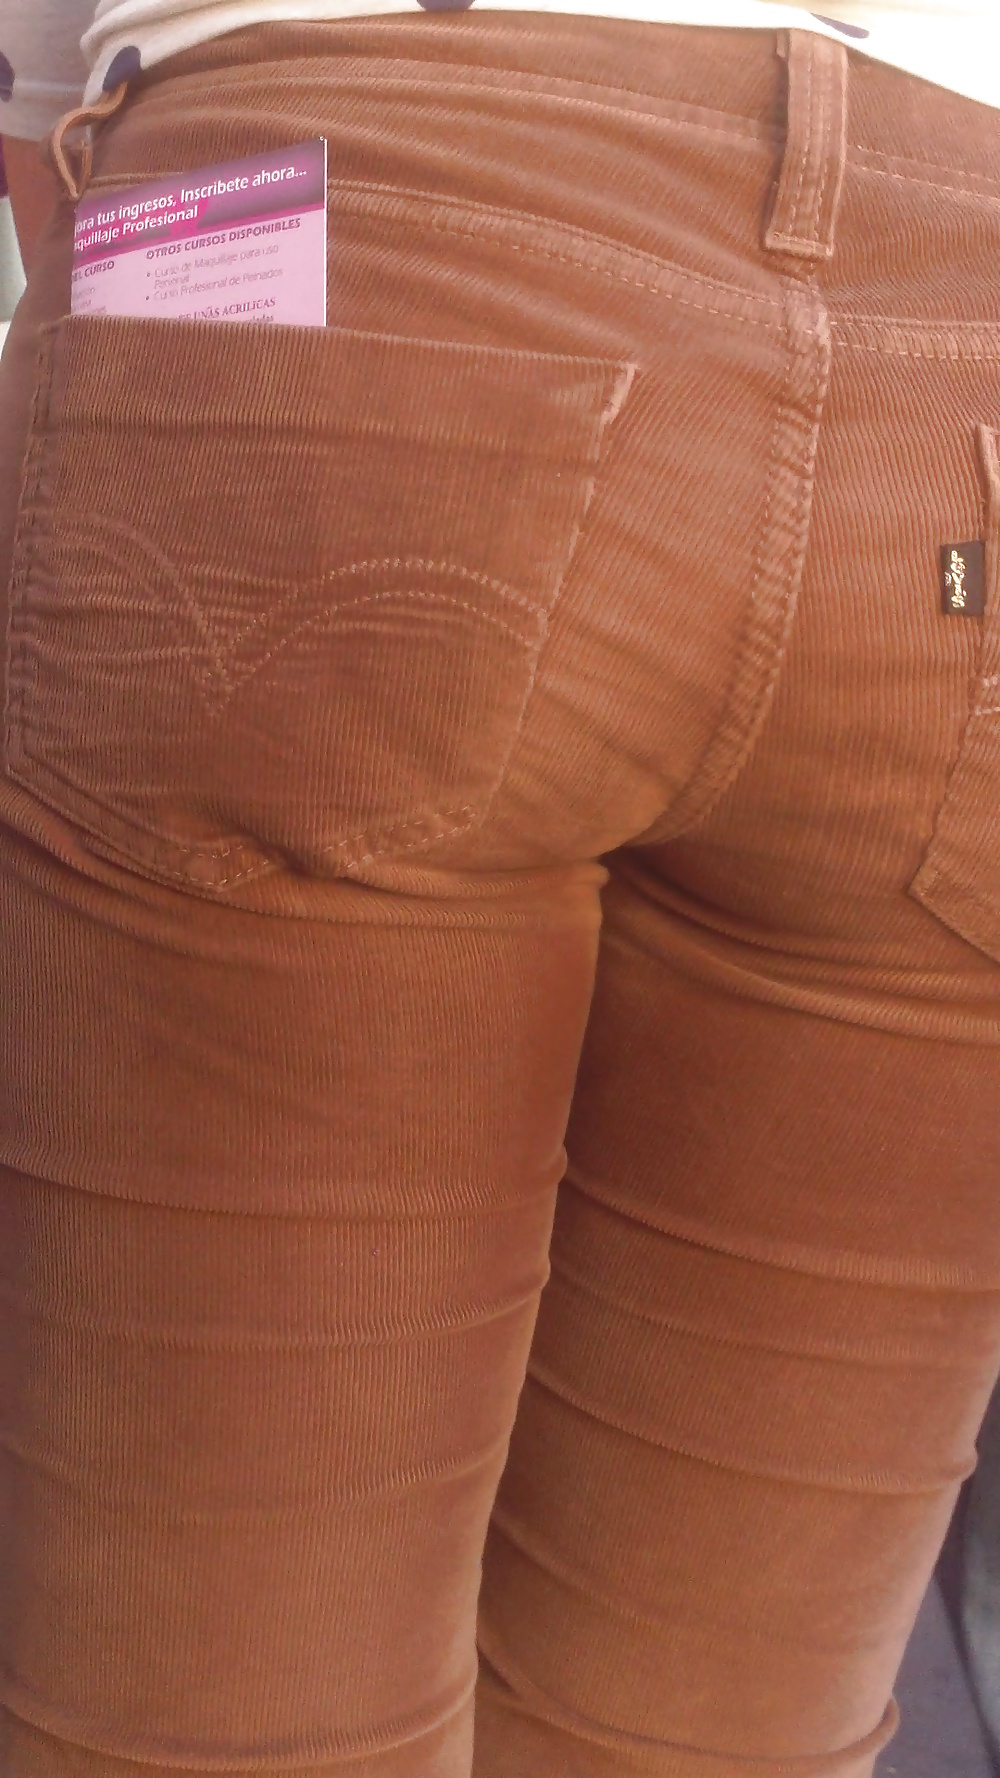 Popular teen girls ass & butt in jeans Part 7 #39949677